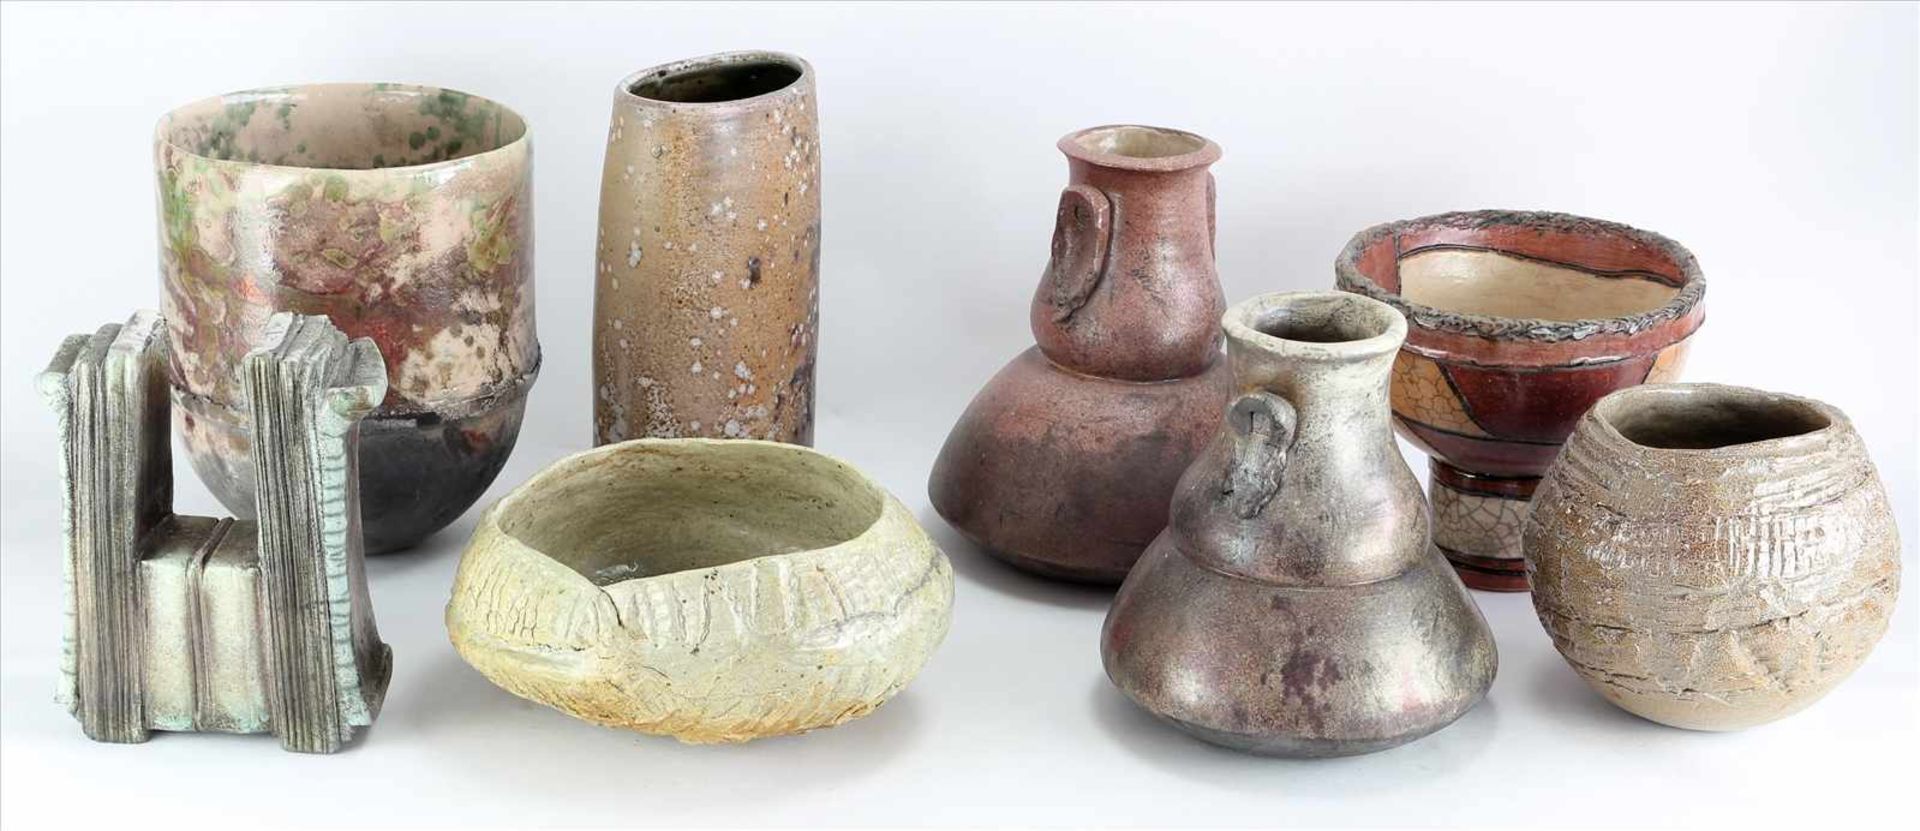 Konvolut Keramik20. Jh. Insgesamt 8 Teile Künstlerkeramik ( art pottery ) in diversen Formen und - Bild 2 aus 5